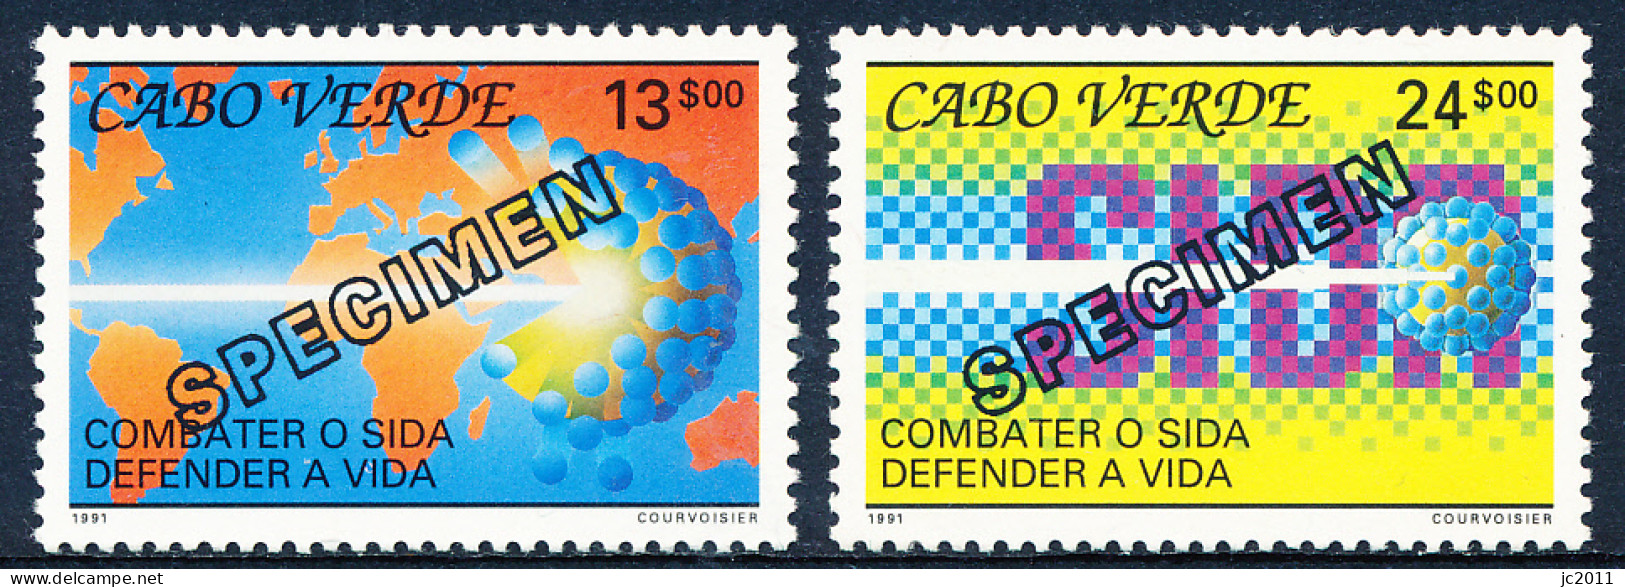 Cabo Verde - 1991 - AIDS - Specimen - MNG - Kap Verde